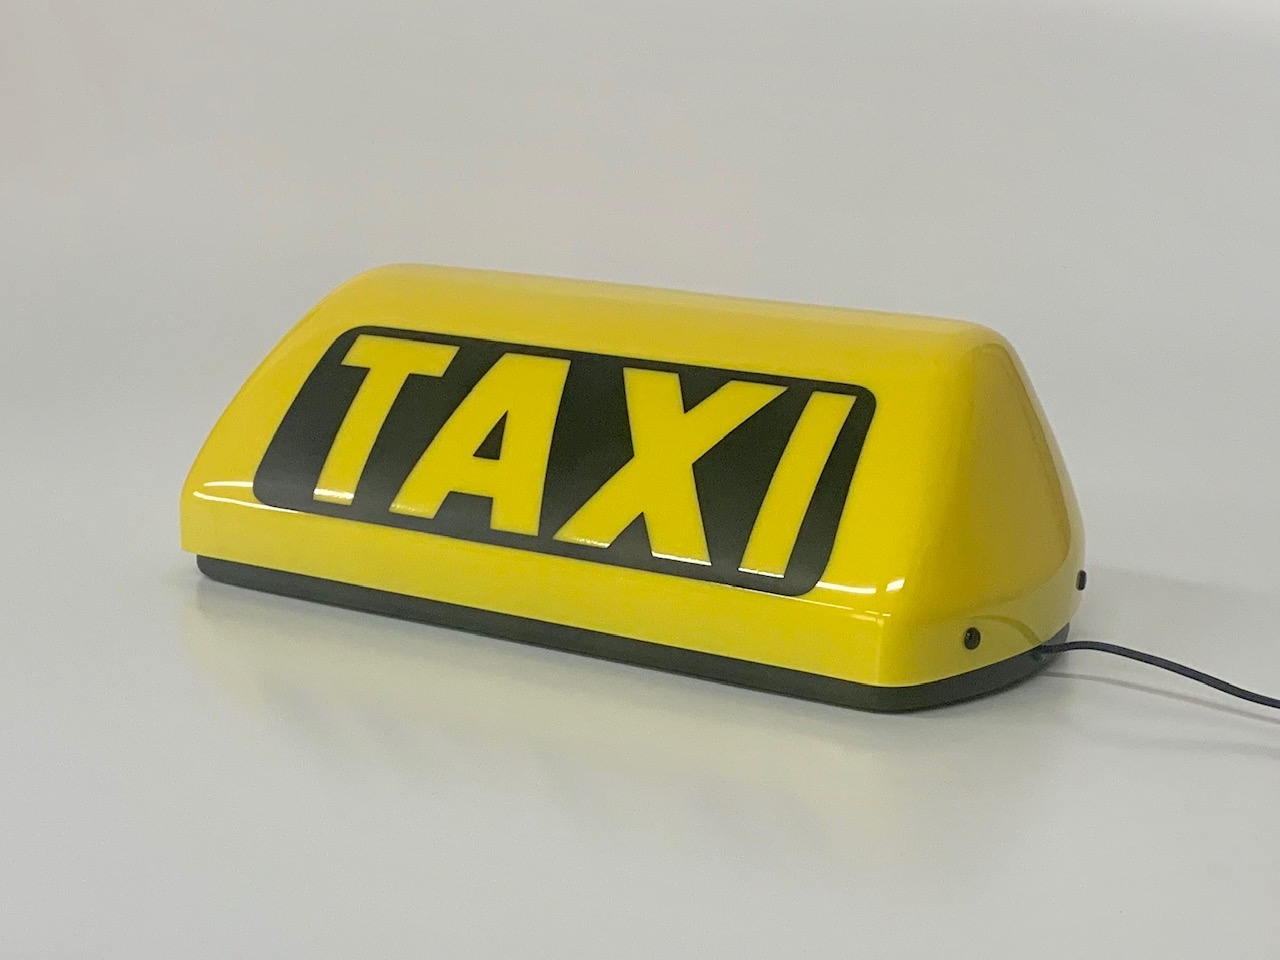 TAXI-Dachleuchten - Taxi-Dachlichter und -schilder